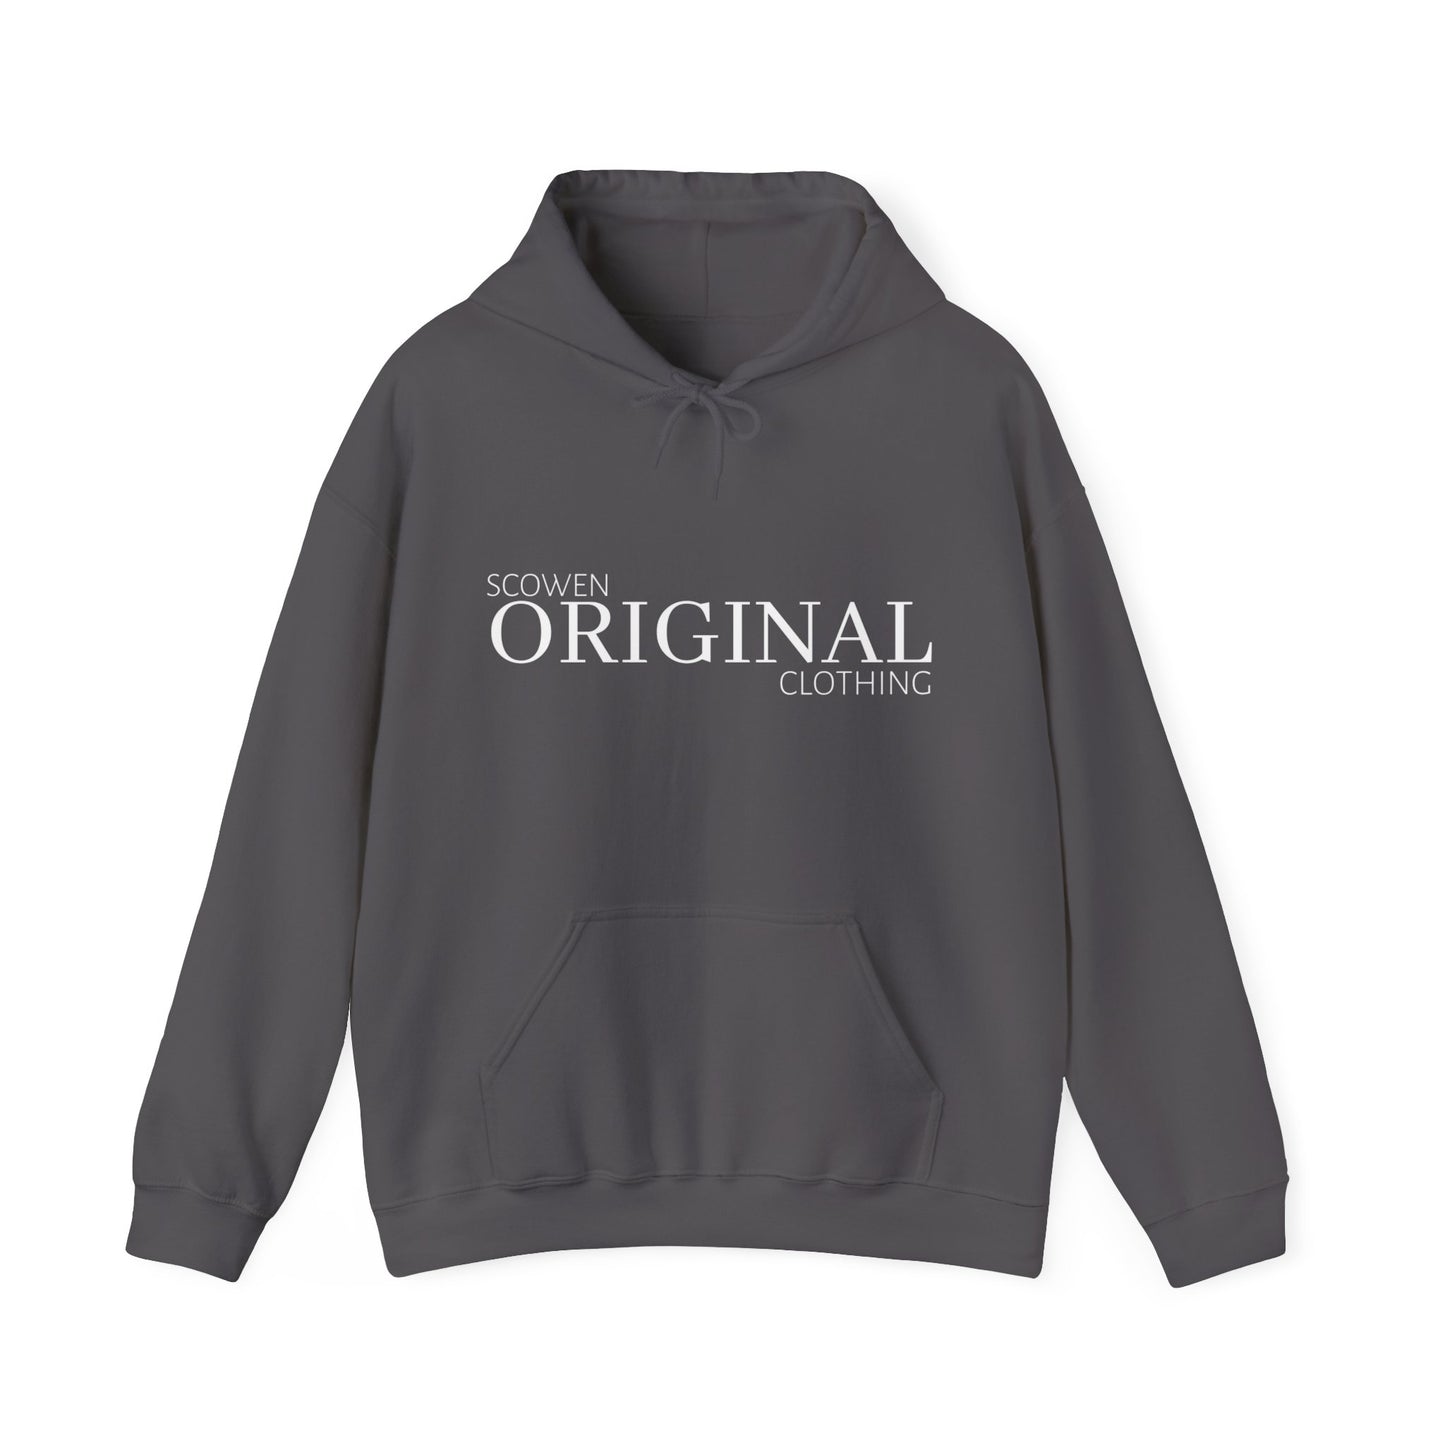 Scowen Clothing original hoodie